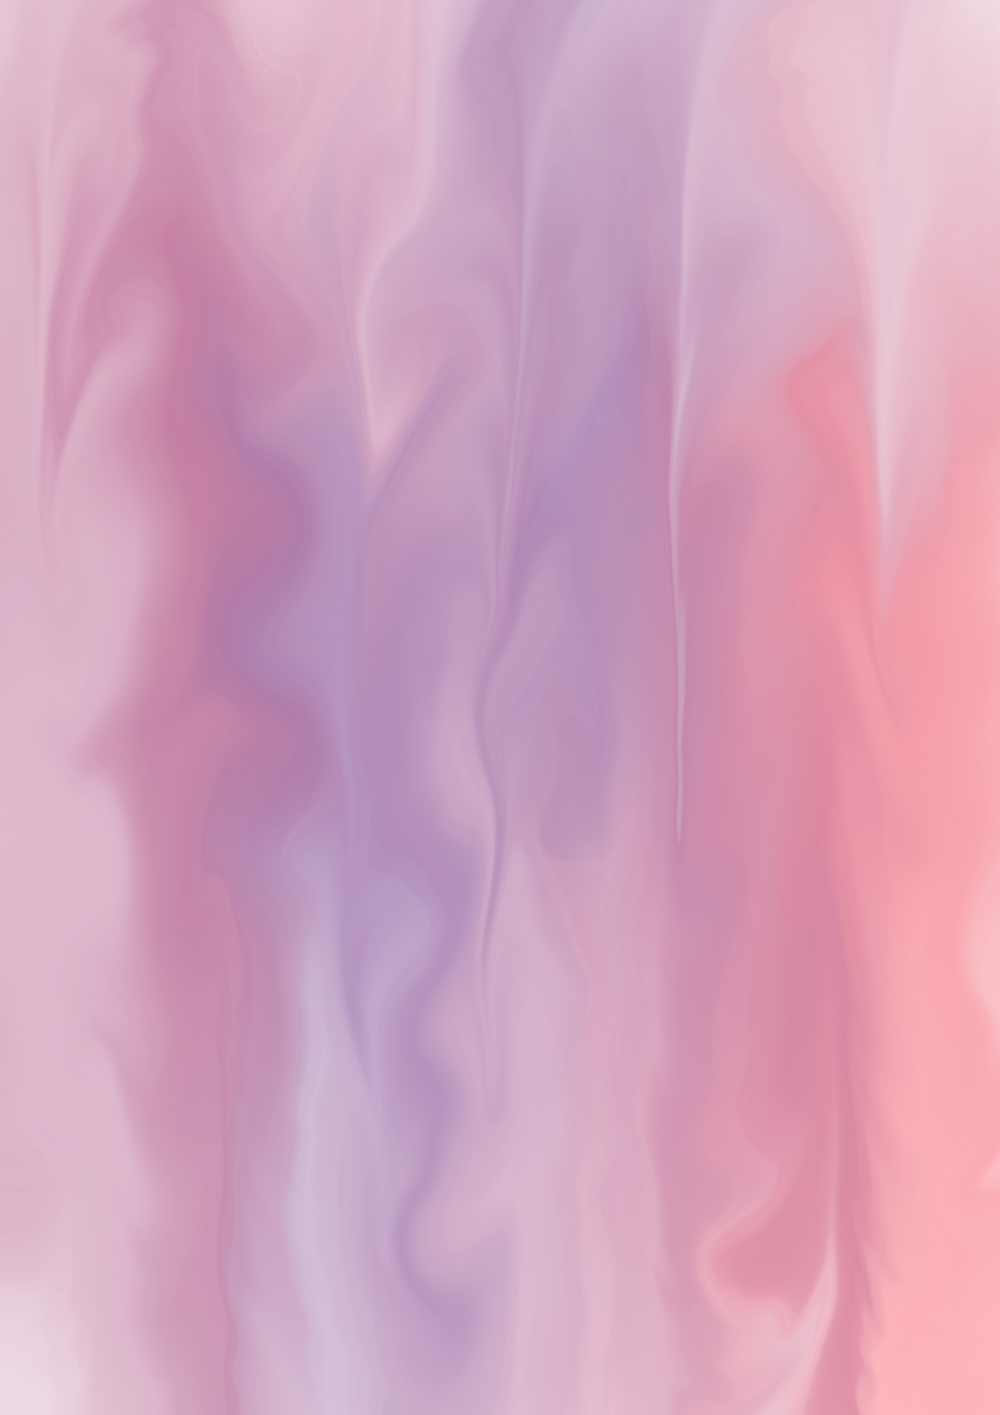 un'immagine sfocata di uno sfondo rosa e viola